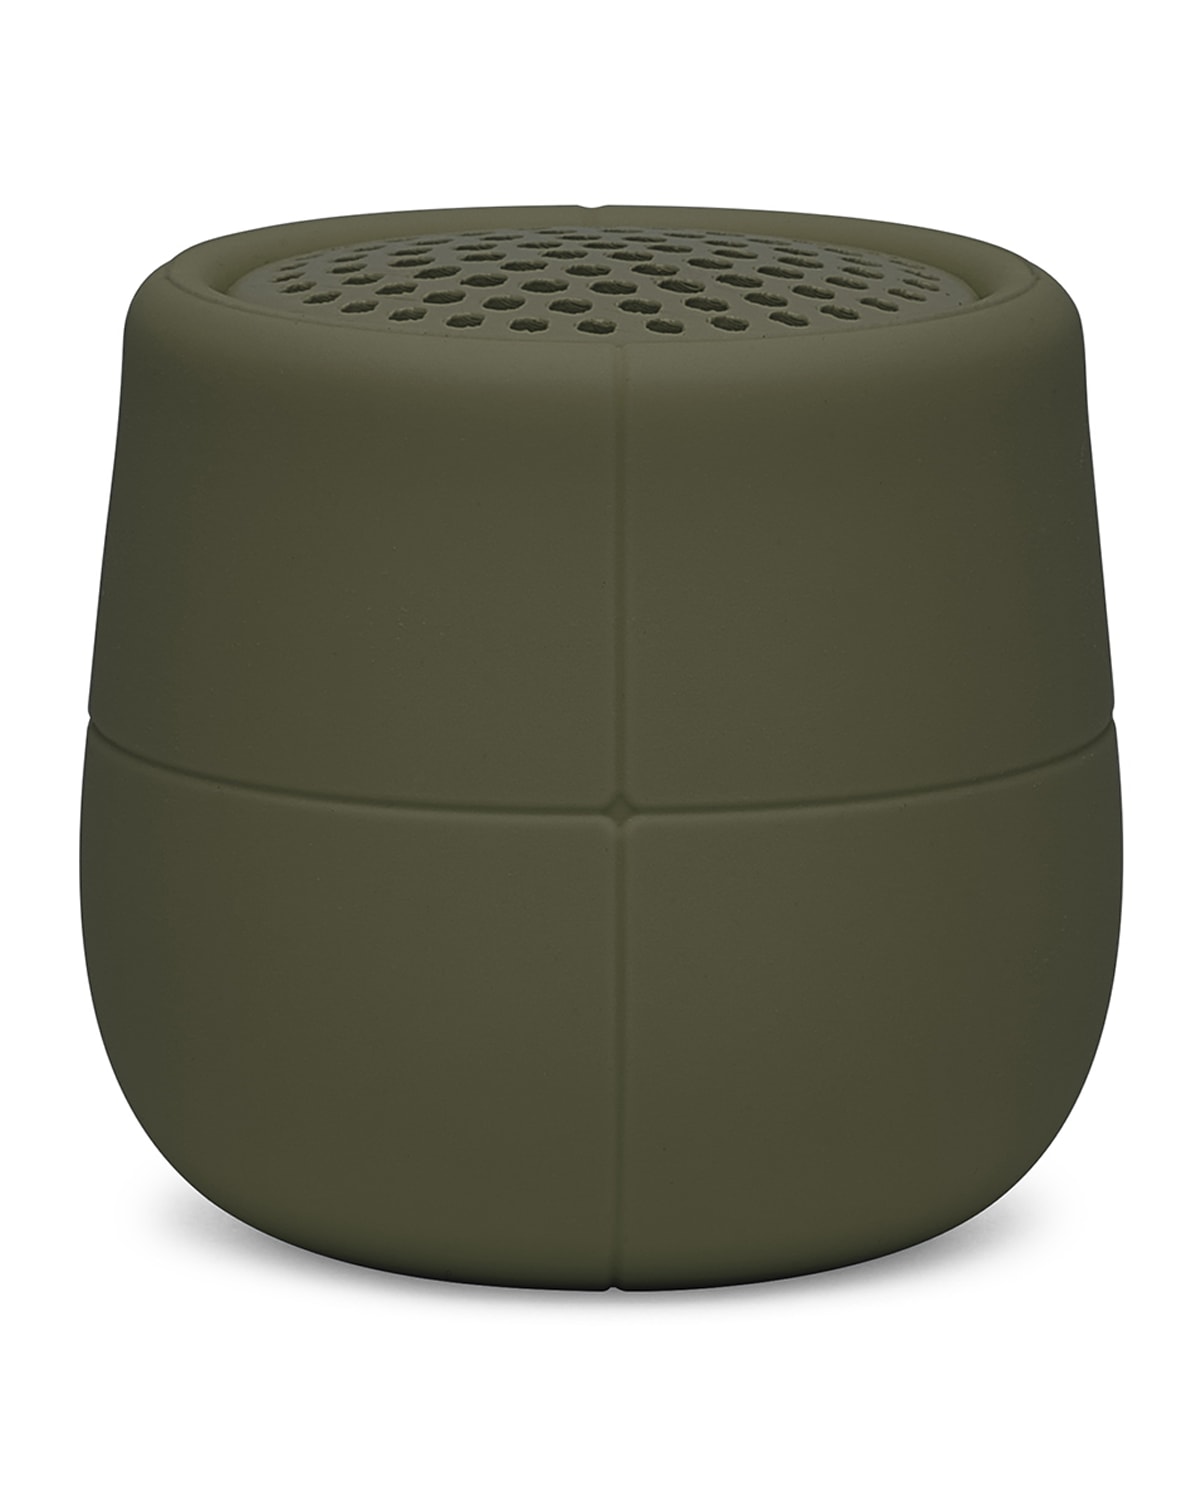 Lexon Design Mino X Water Resistant Floating Bluetooth Speaker In Rubber Kakhi